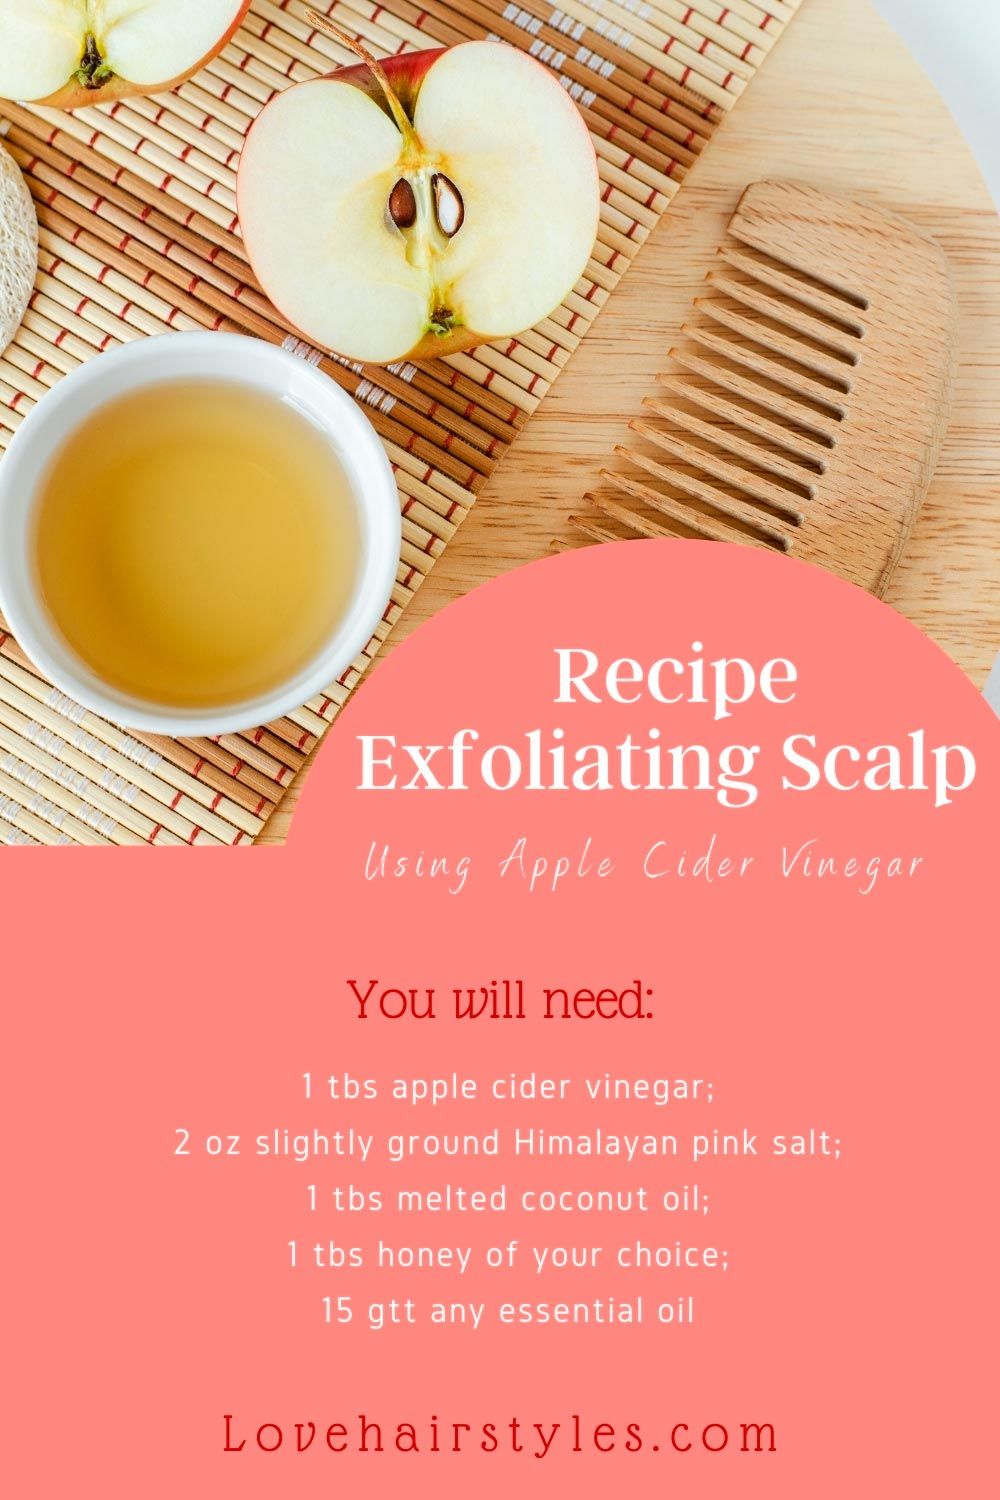 Exfoliating Scalp Recipe Using Apple Cider Vinegar